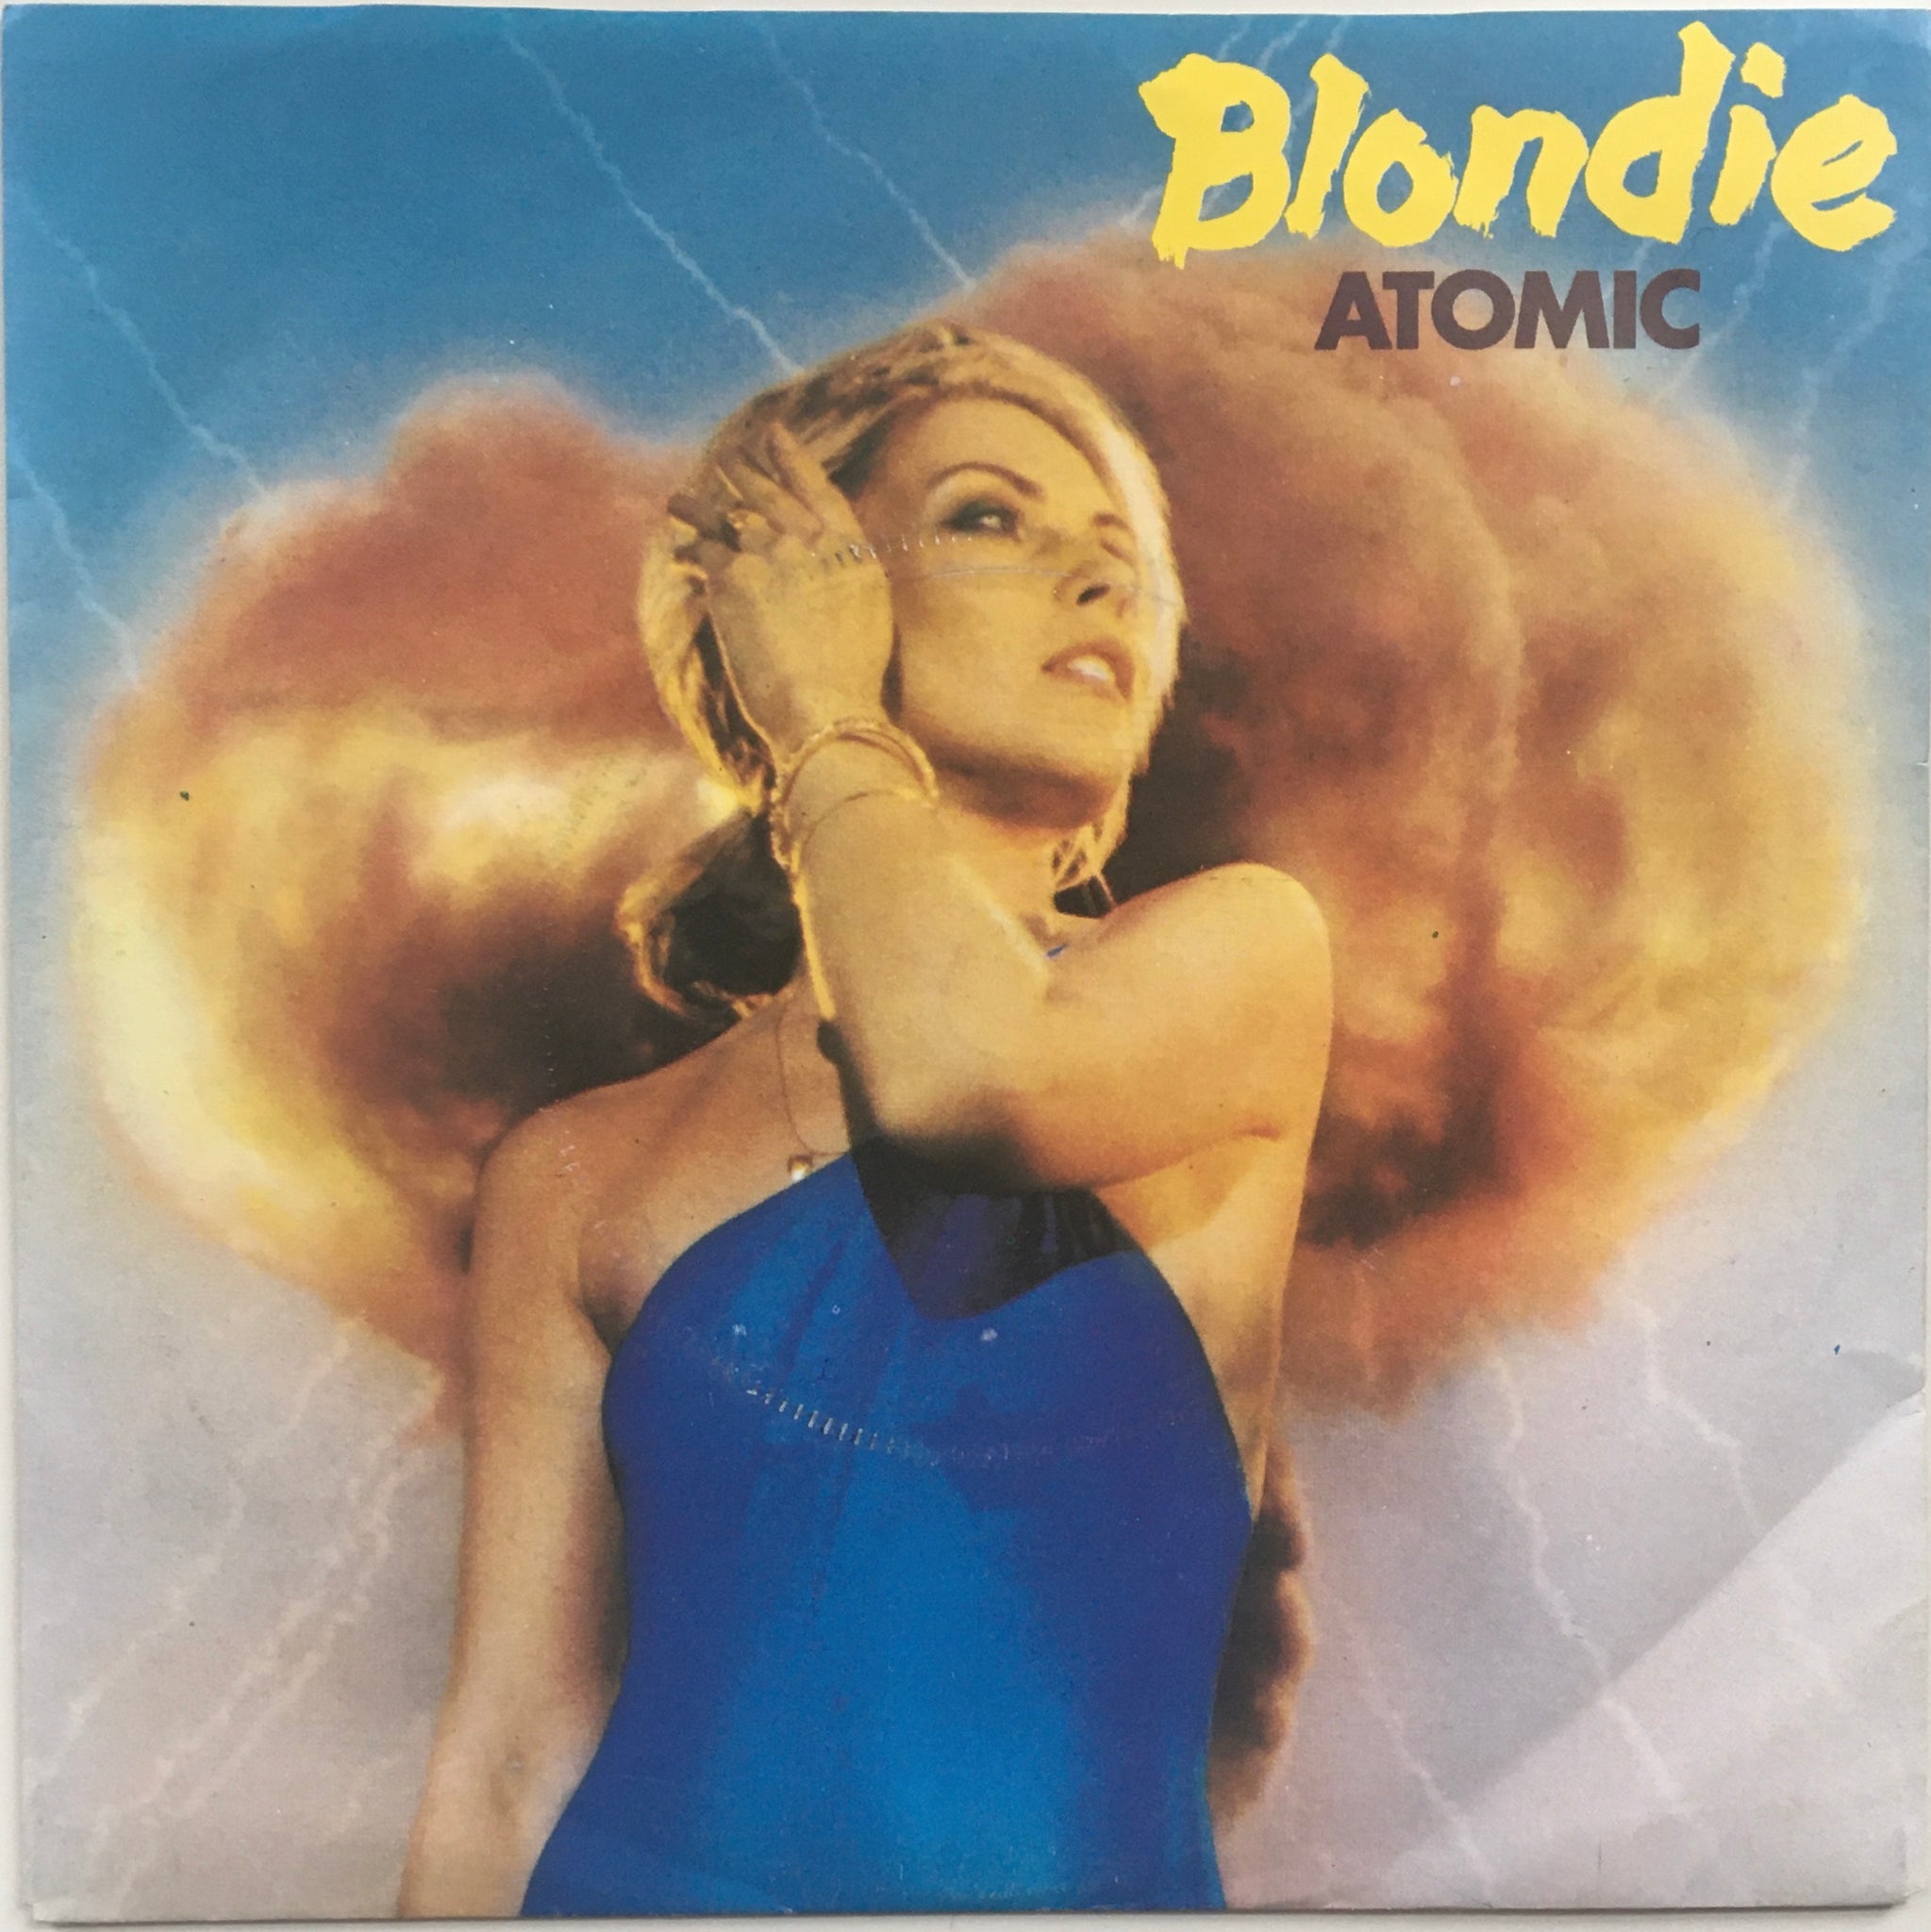 Blondie, "Atomic" Single (1980). Front cover image. Pop-punk, power pop. Punk.